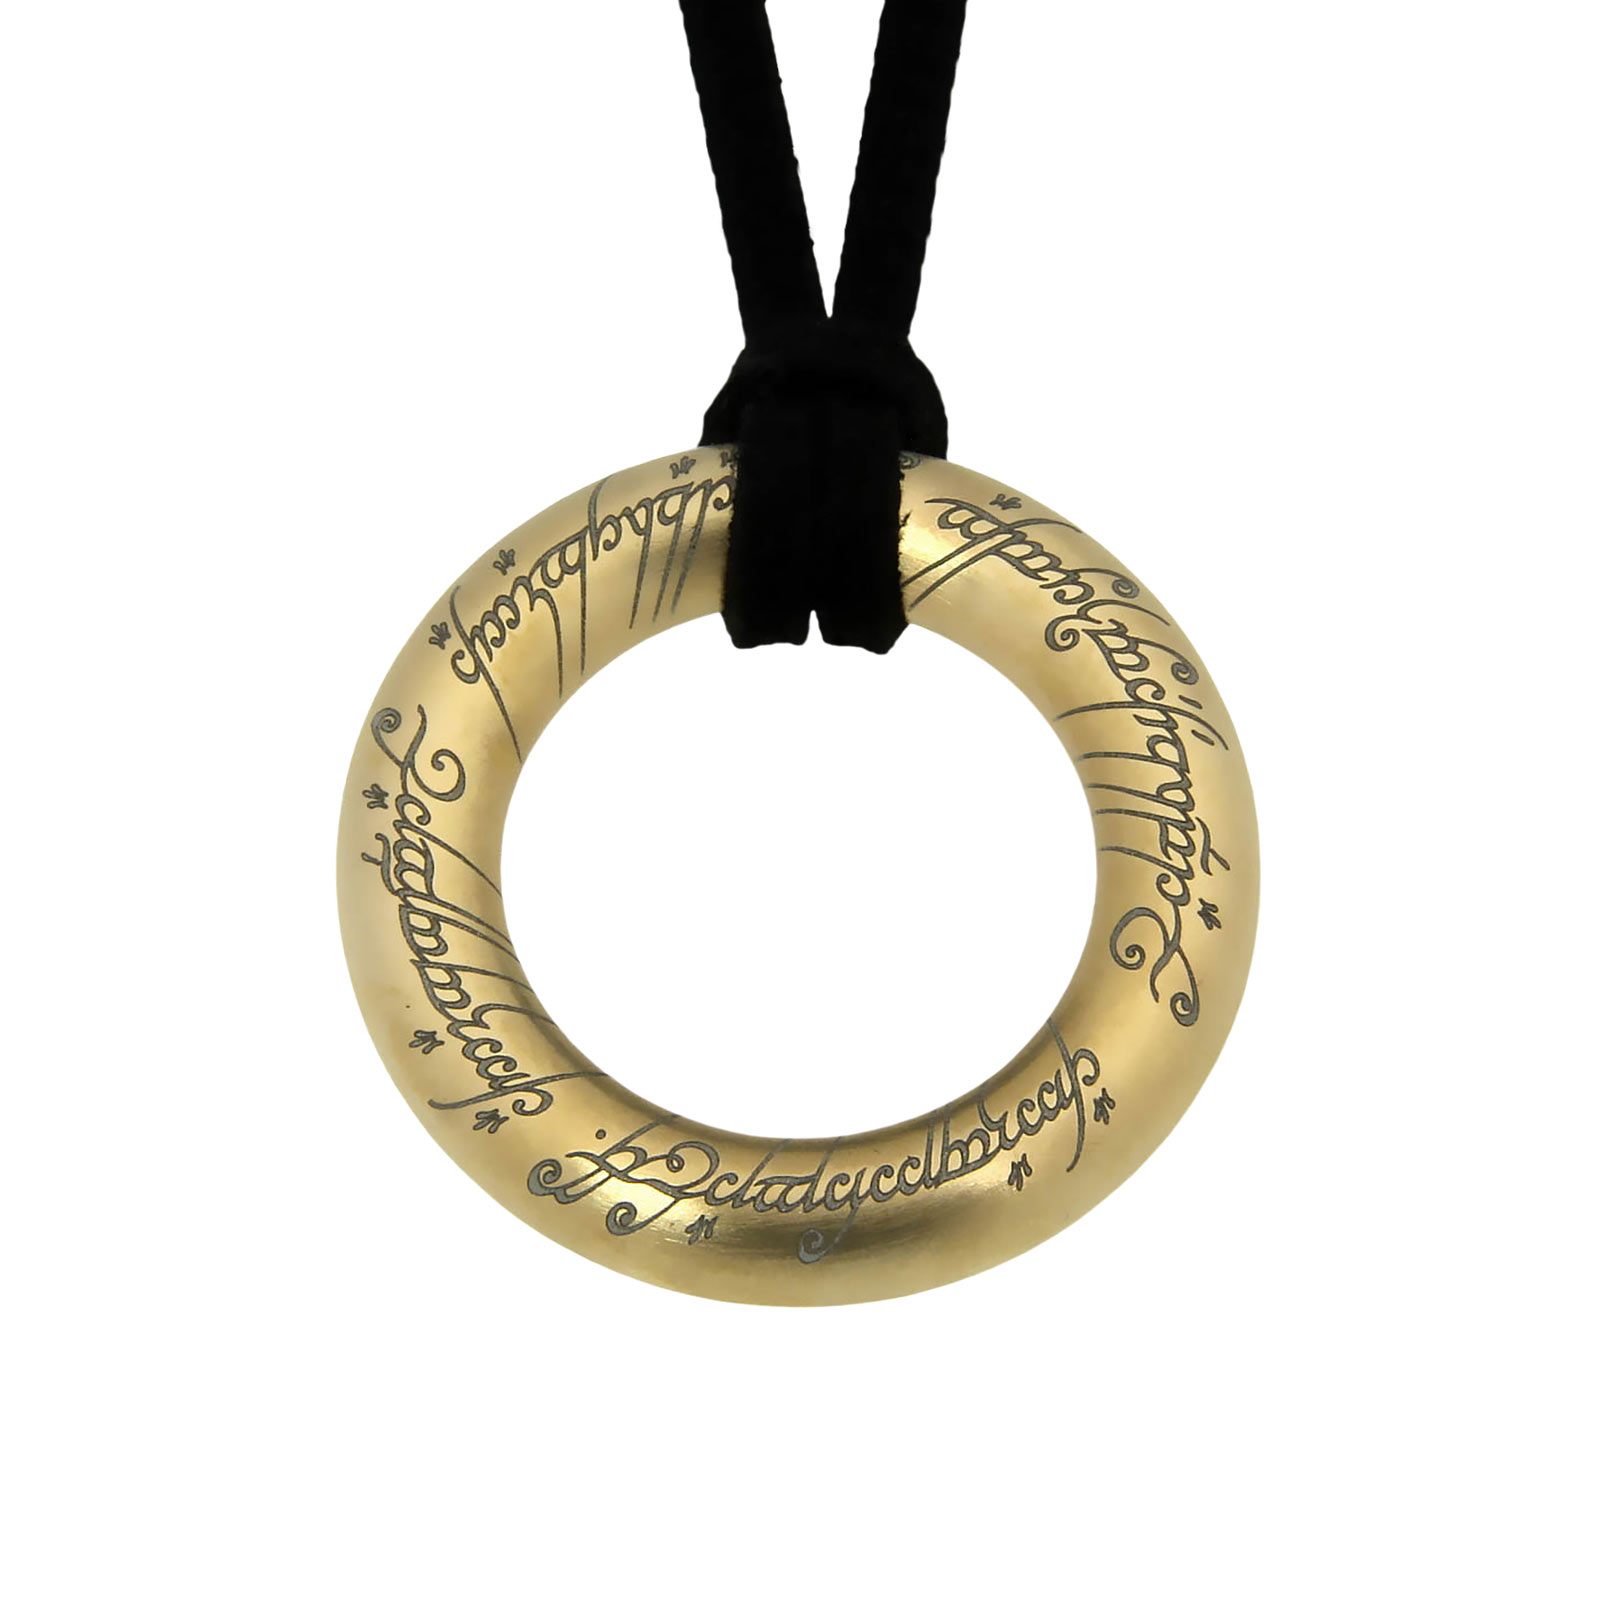 Herr der Ringe - Der Eine Ring Anhänger Edelstahl vergoldet